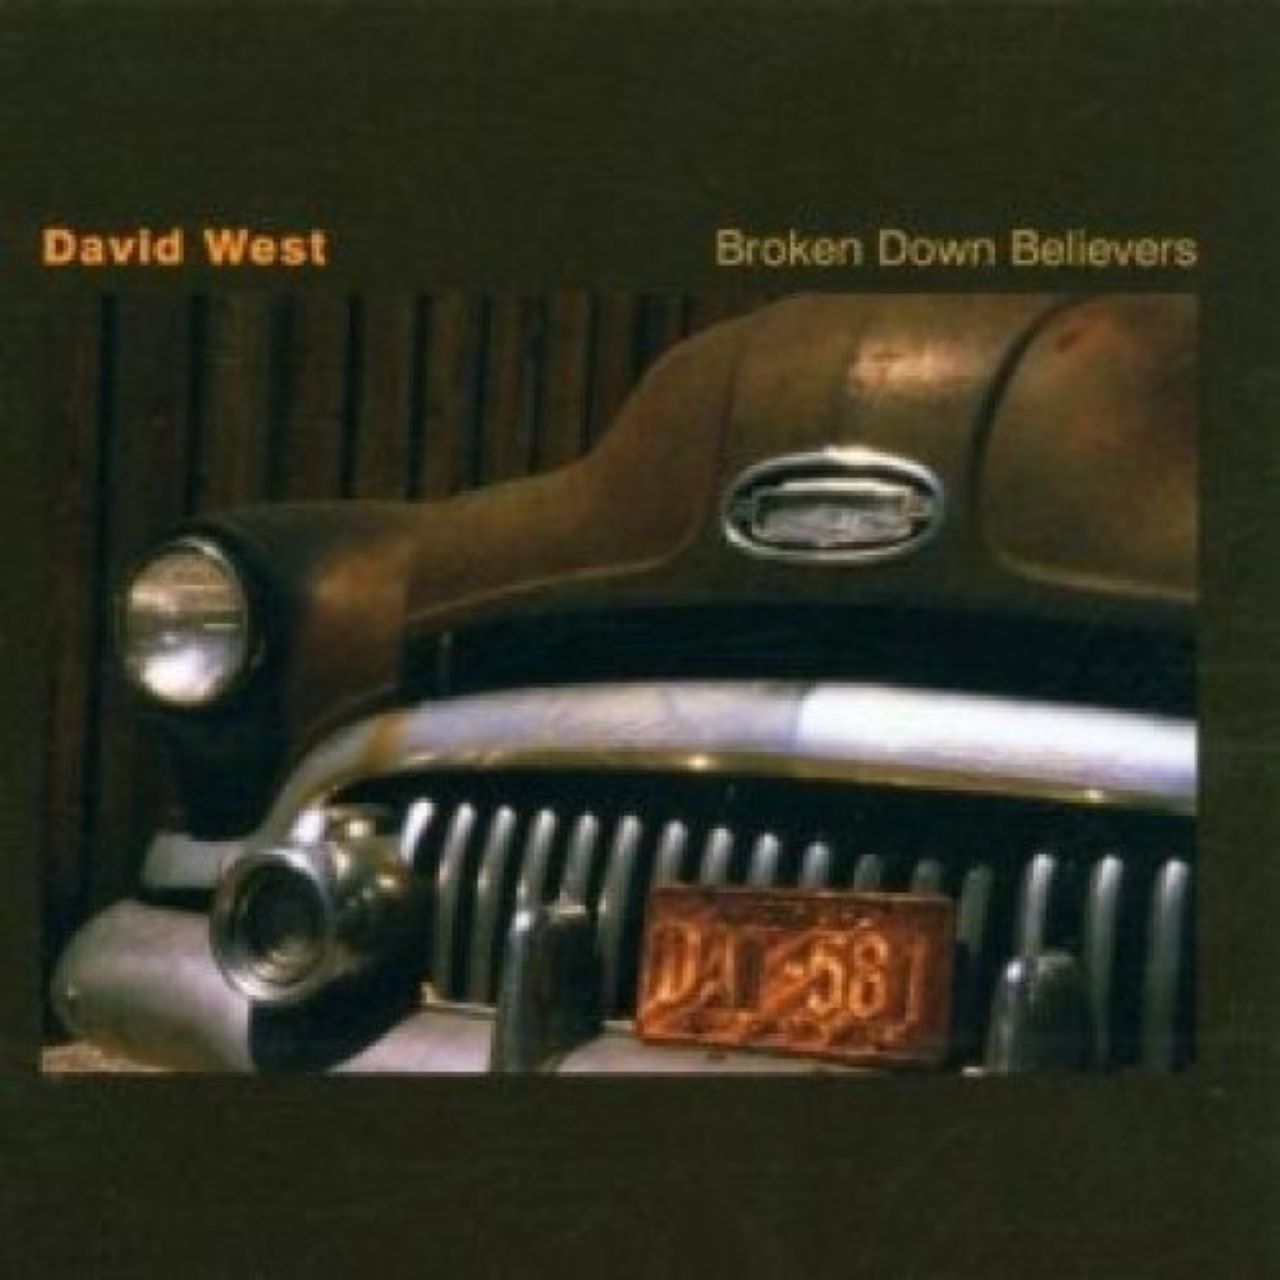 David West - Broken Down Believers cover album